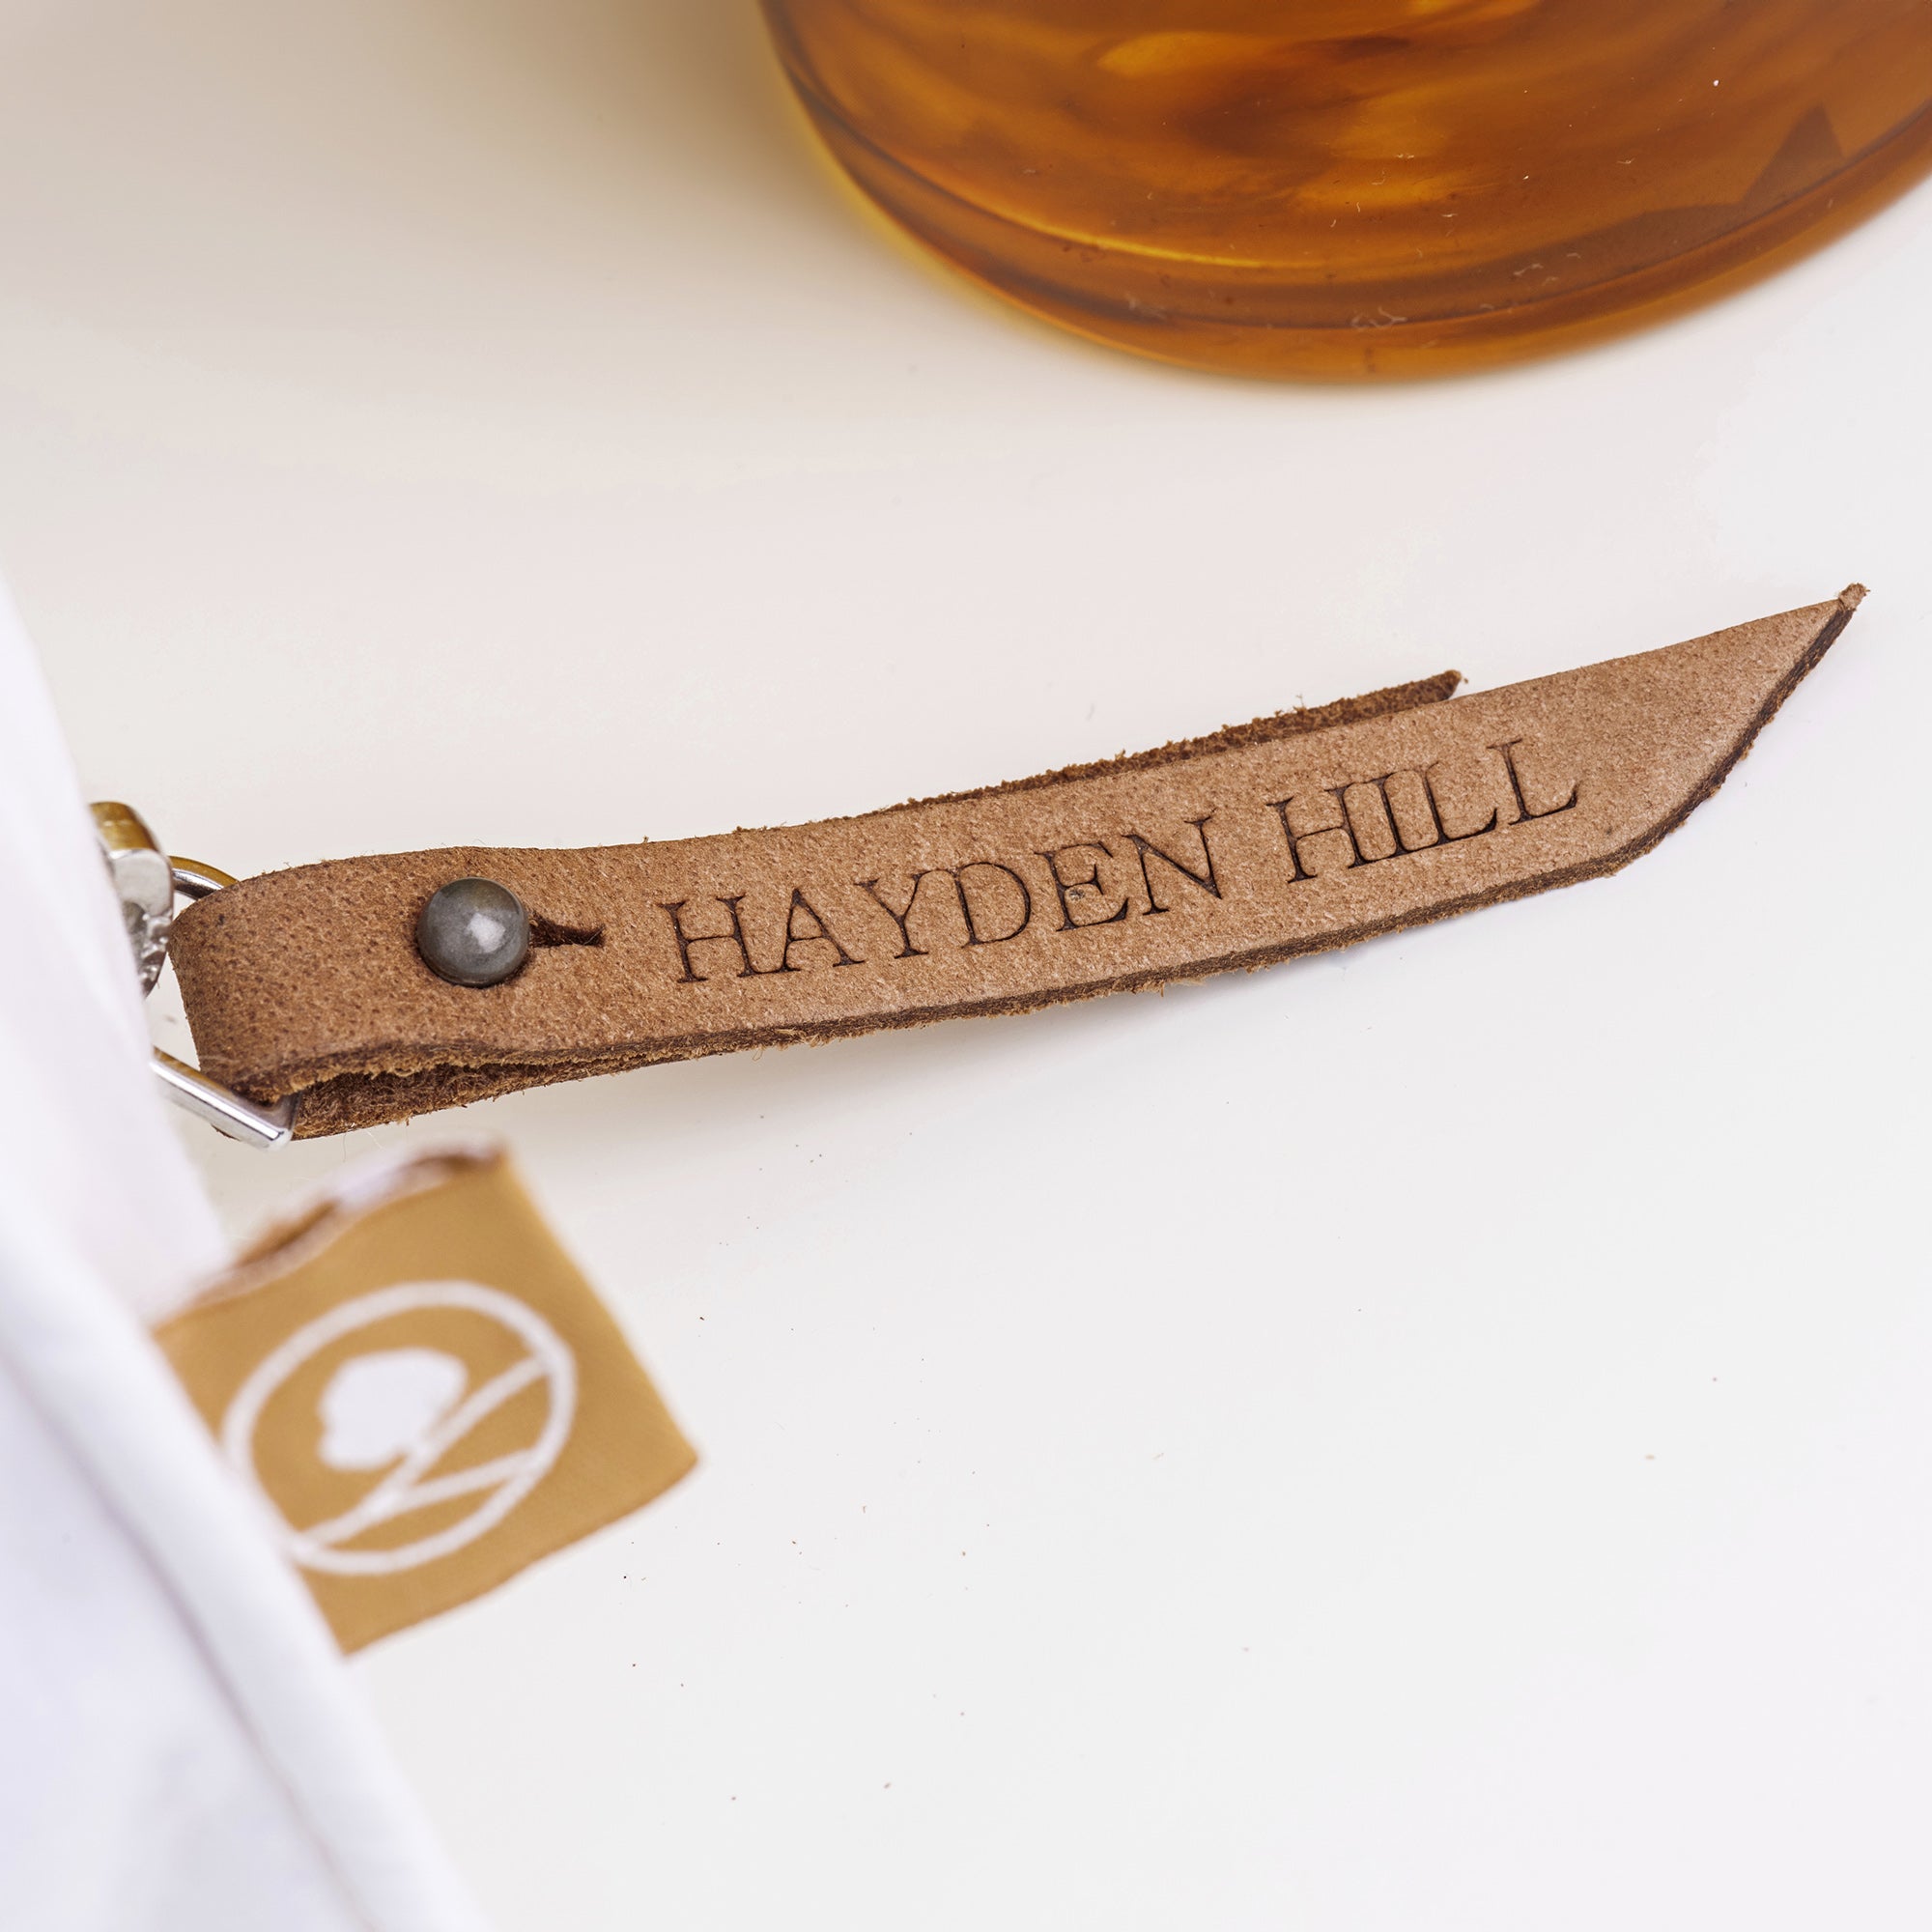 https://hayden-hill.com/cdn/shop/files/hayden-hill-organic-cotton-garment-bag-with-leather-zipper_8cc4d087-a5ec-4690-9890-5a48a1879806.jpg?v=1698940598&width=2048